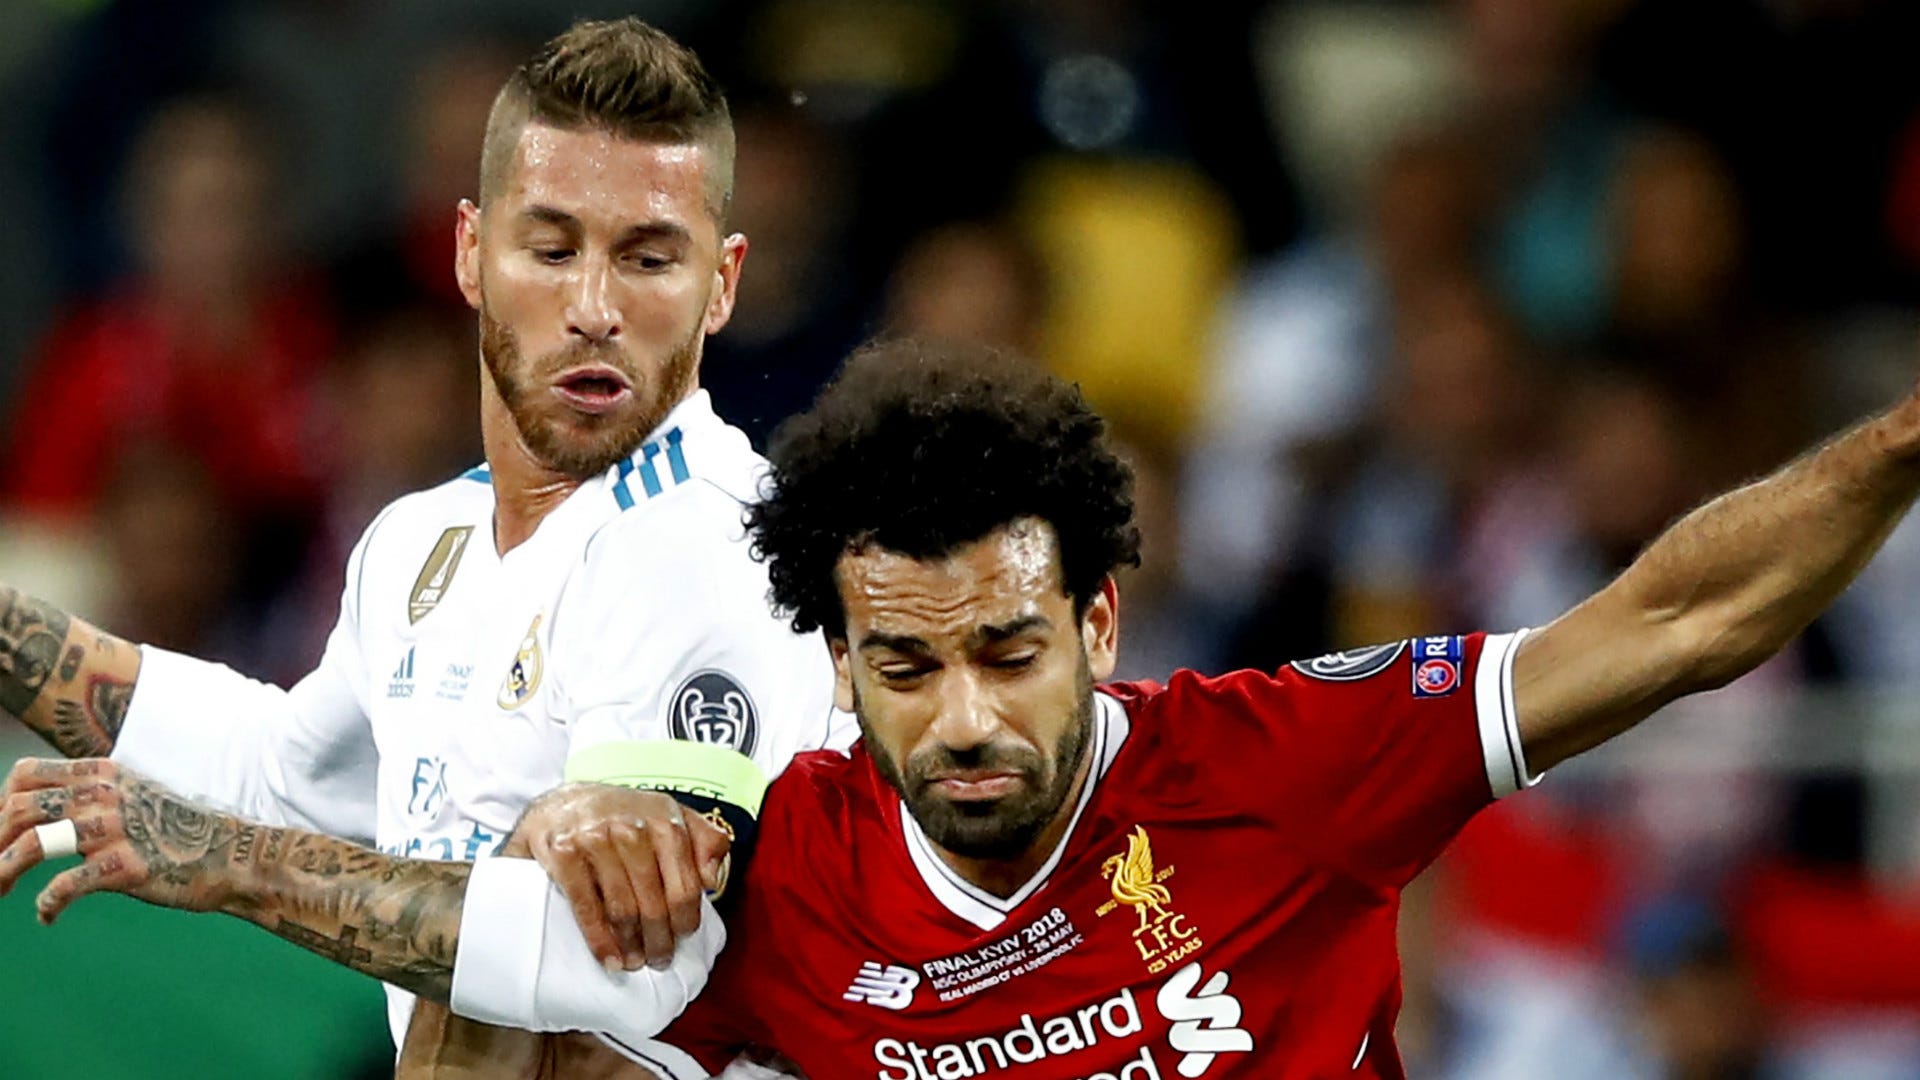 Ramos: "Joder, dado bola al tema de Salah" | Goal.com Espana